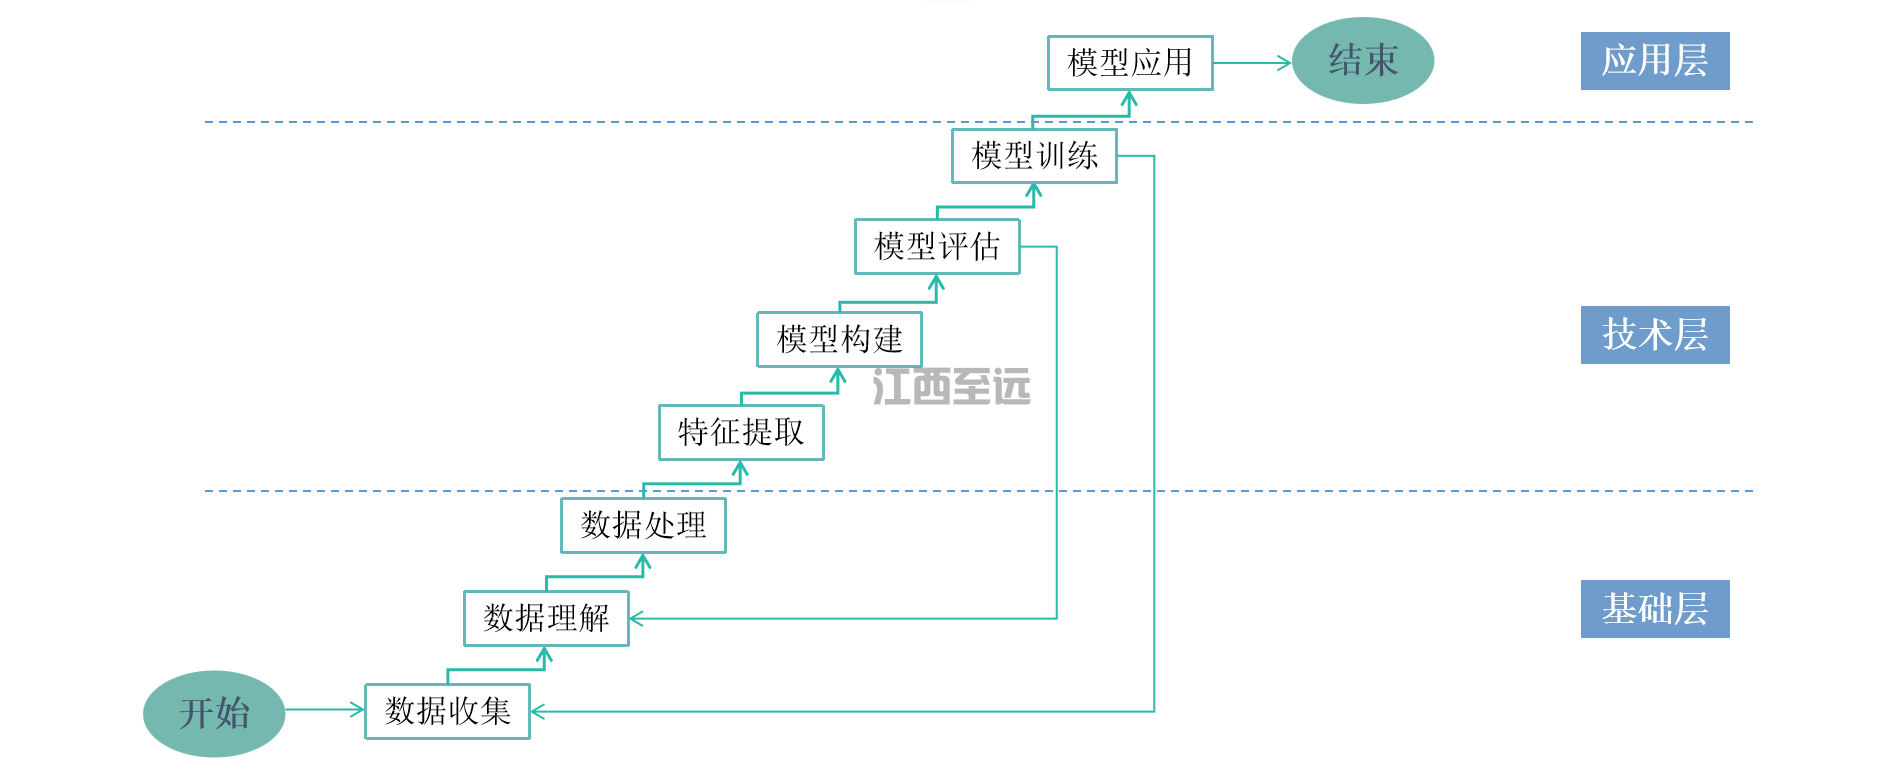 江西至遠-AI安全監管系統(圖3)